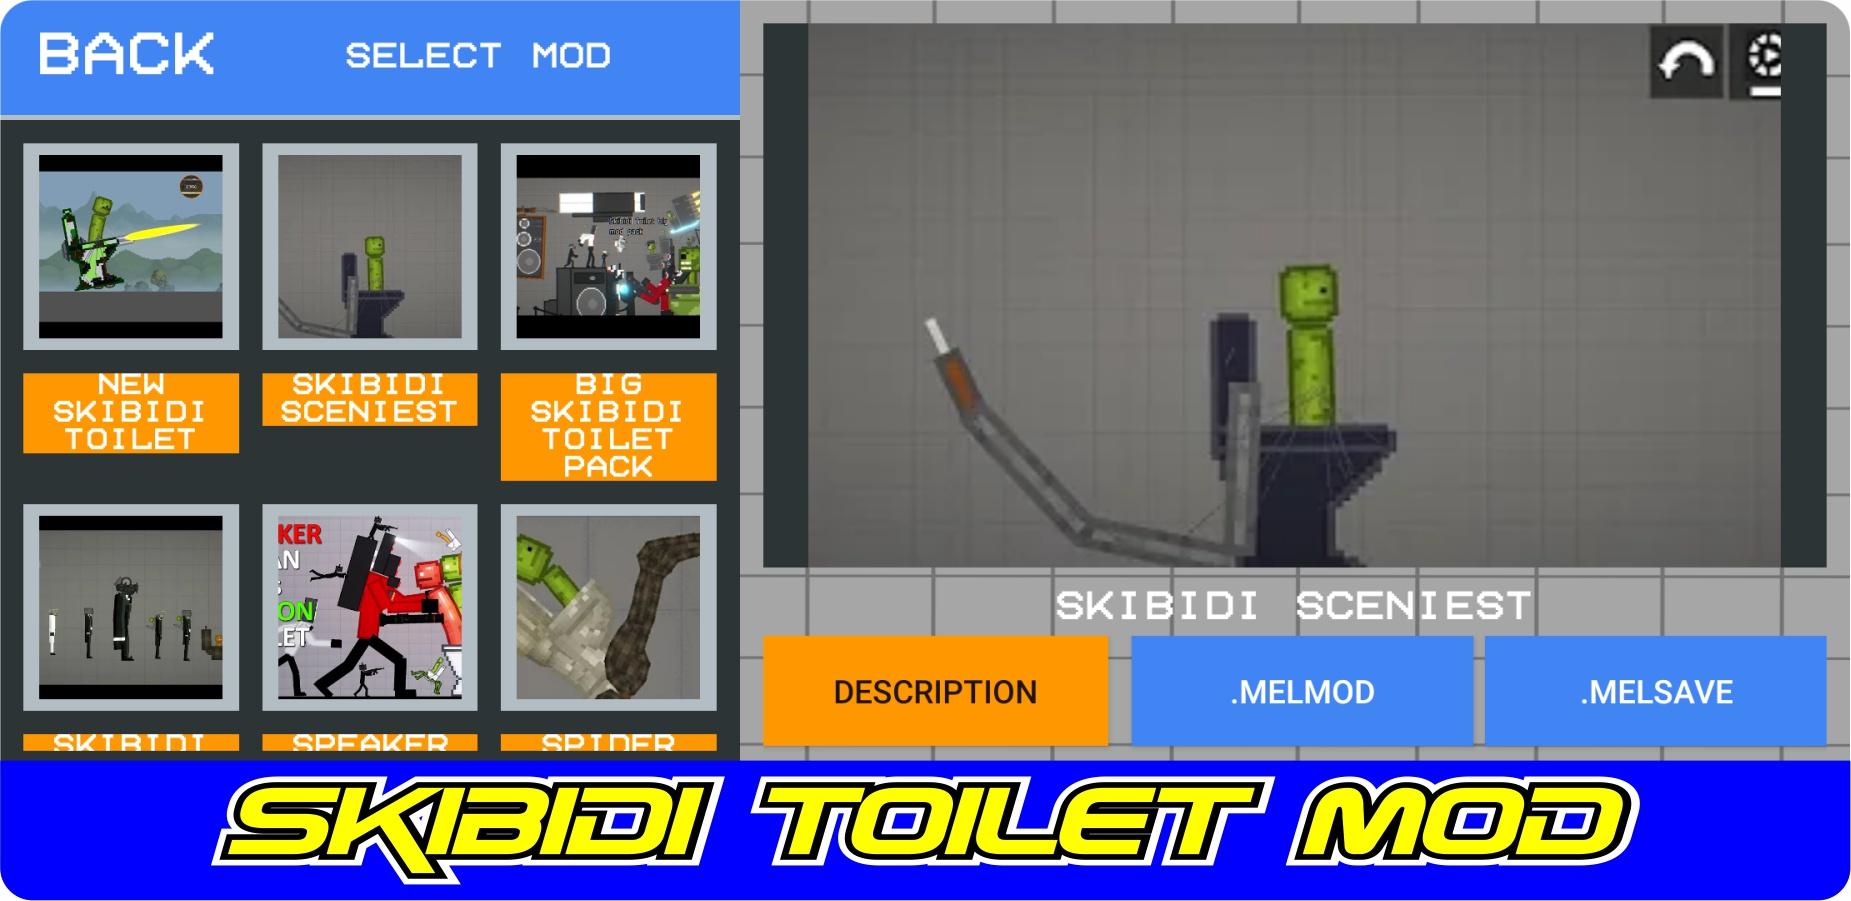 Skibidi toilet mod 19.1. Скибиди туалет ТОВЕР дефенс коды. SKIBIDI лаборатория читы читы.